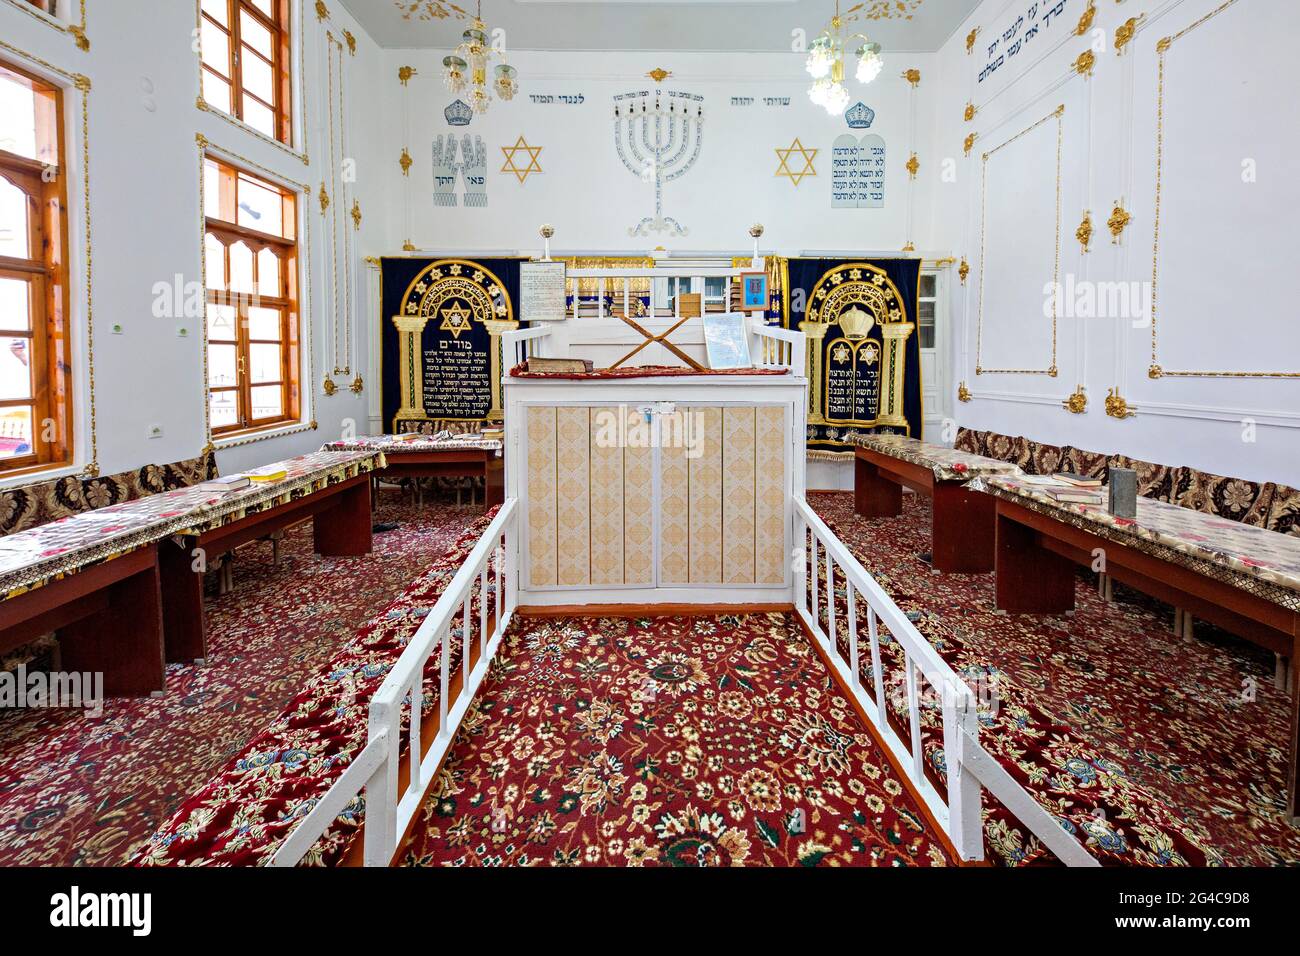 Interior of the Bukhara Synagogue, in Bukhara, Uzbekistan Stock Photo